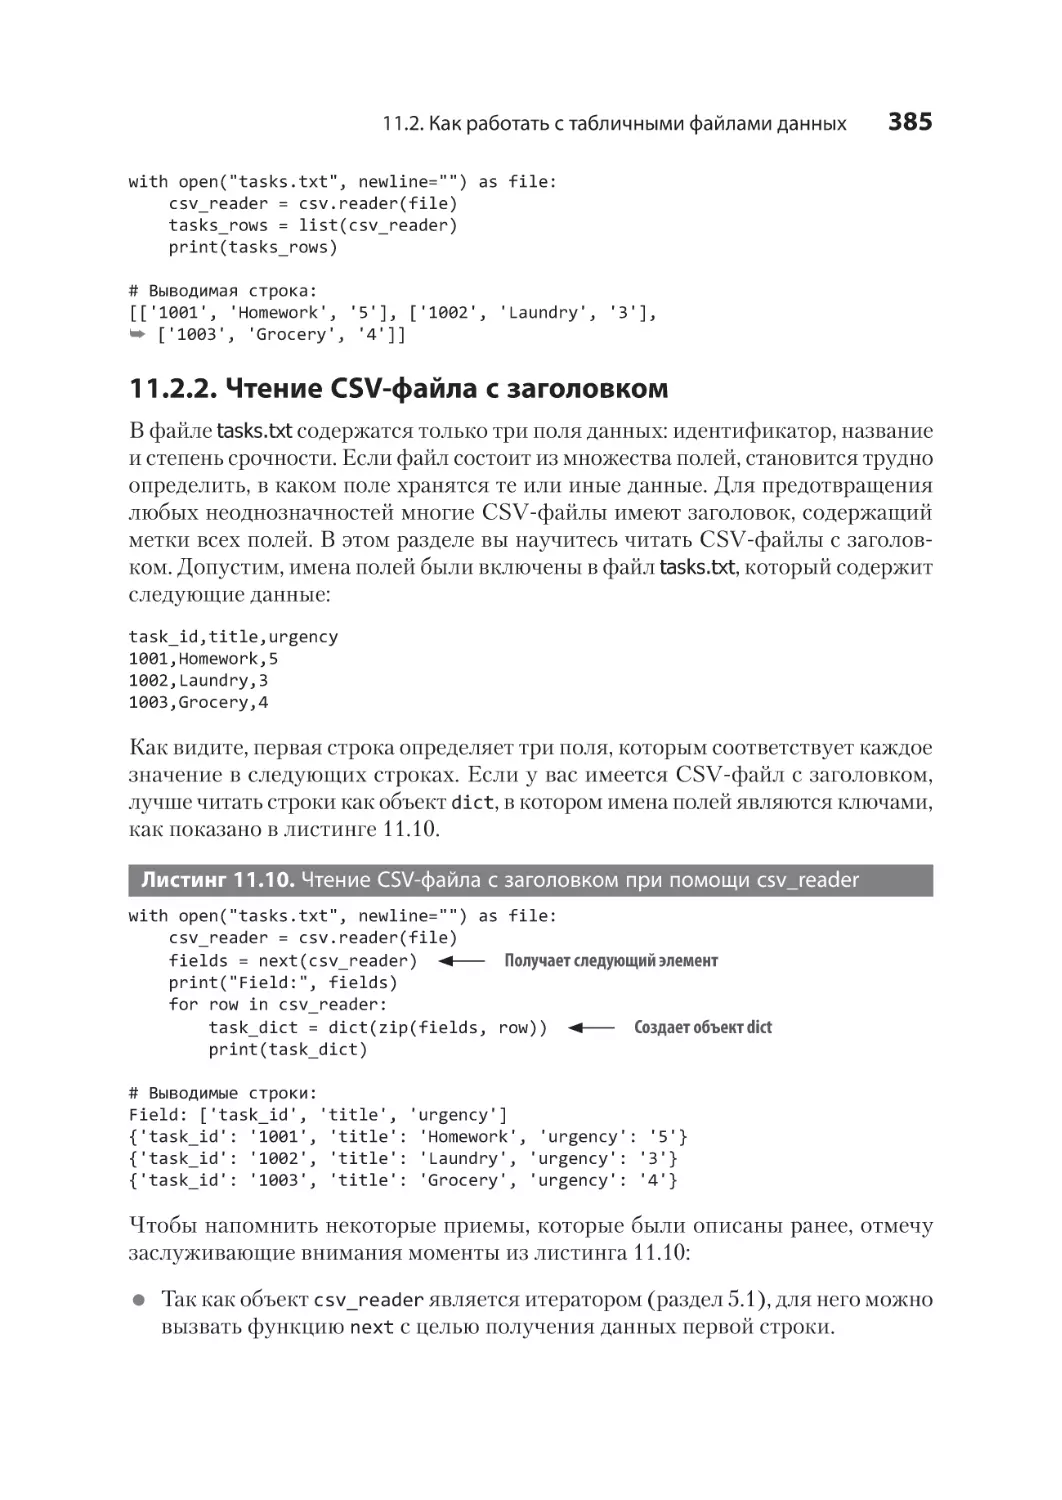 11.2.2. Чтение CSV-файла с заголовком